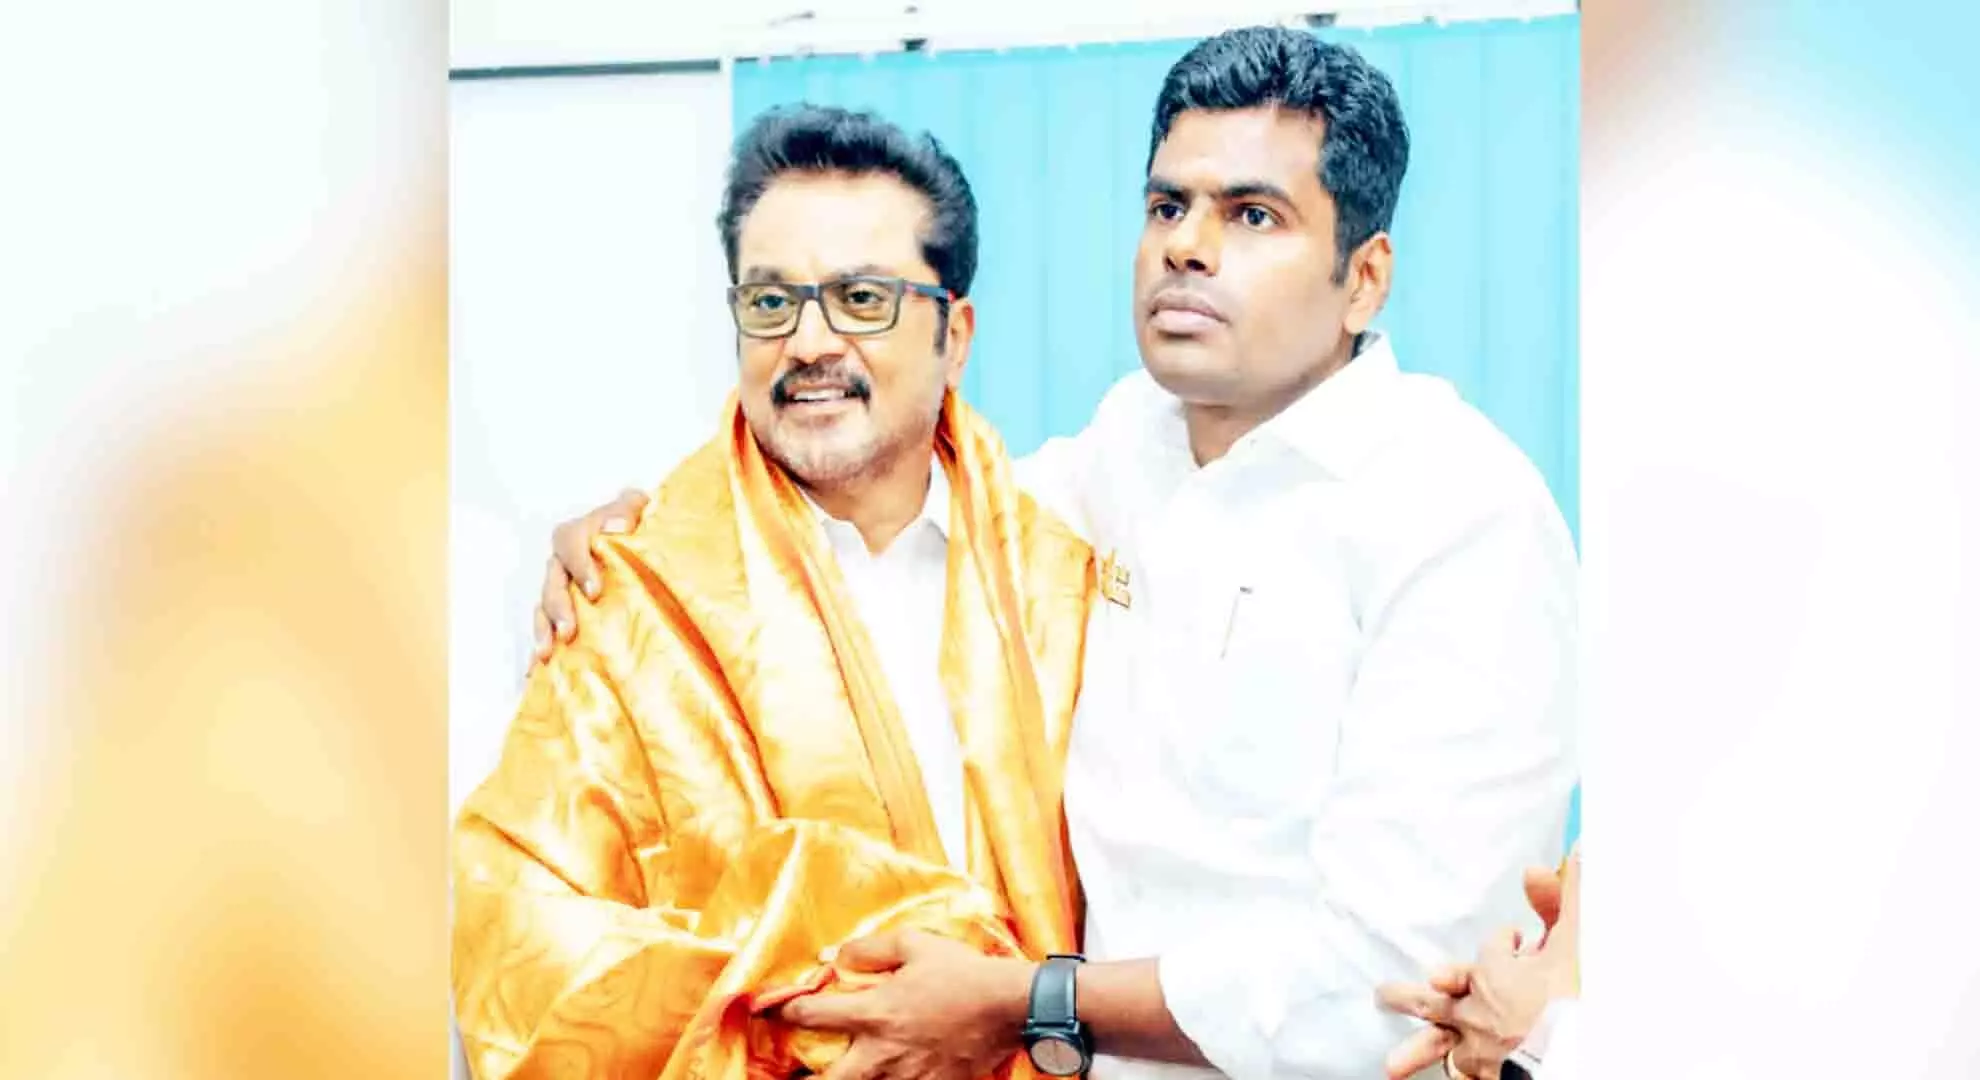 तमिल अभिनेता सरथ कुमार ने अपनी पार्टी का भाजपा में विलय कर दिया